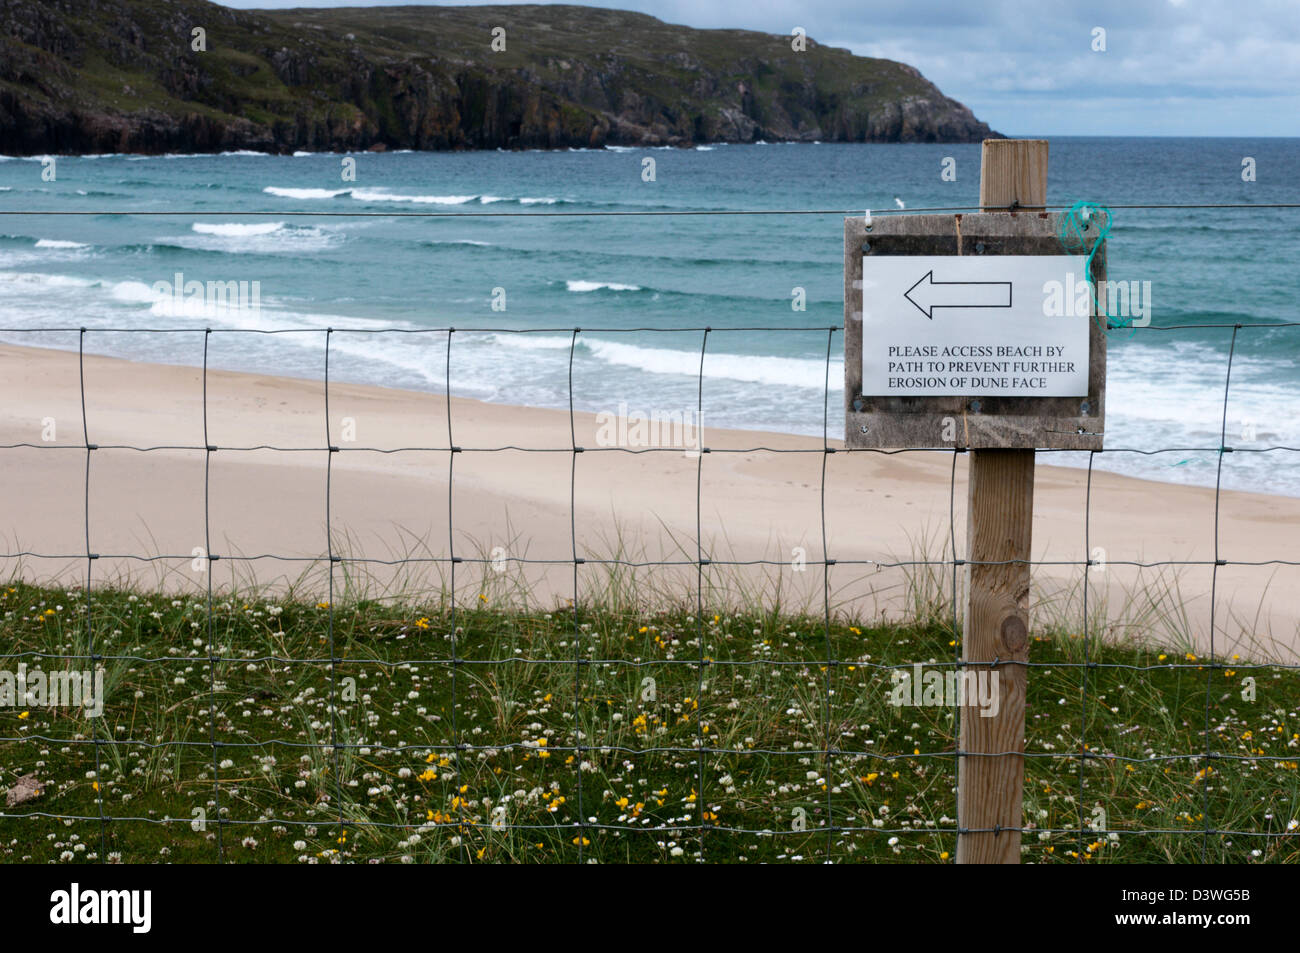 Segno indirizzare i visitatori per accedere alla spiaggia da evitare fenomeni di erosione delle dune, Tràigh na Clibhe sull'isola di Lewis nelle Ebridi Esterne. Foto Stock